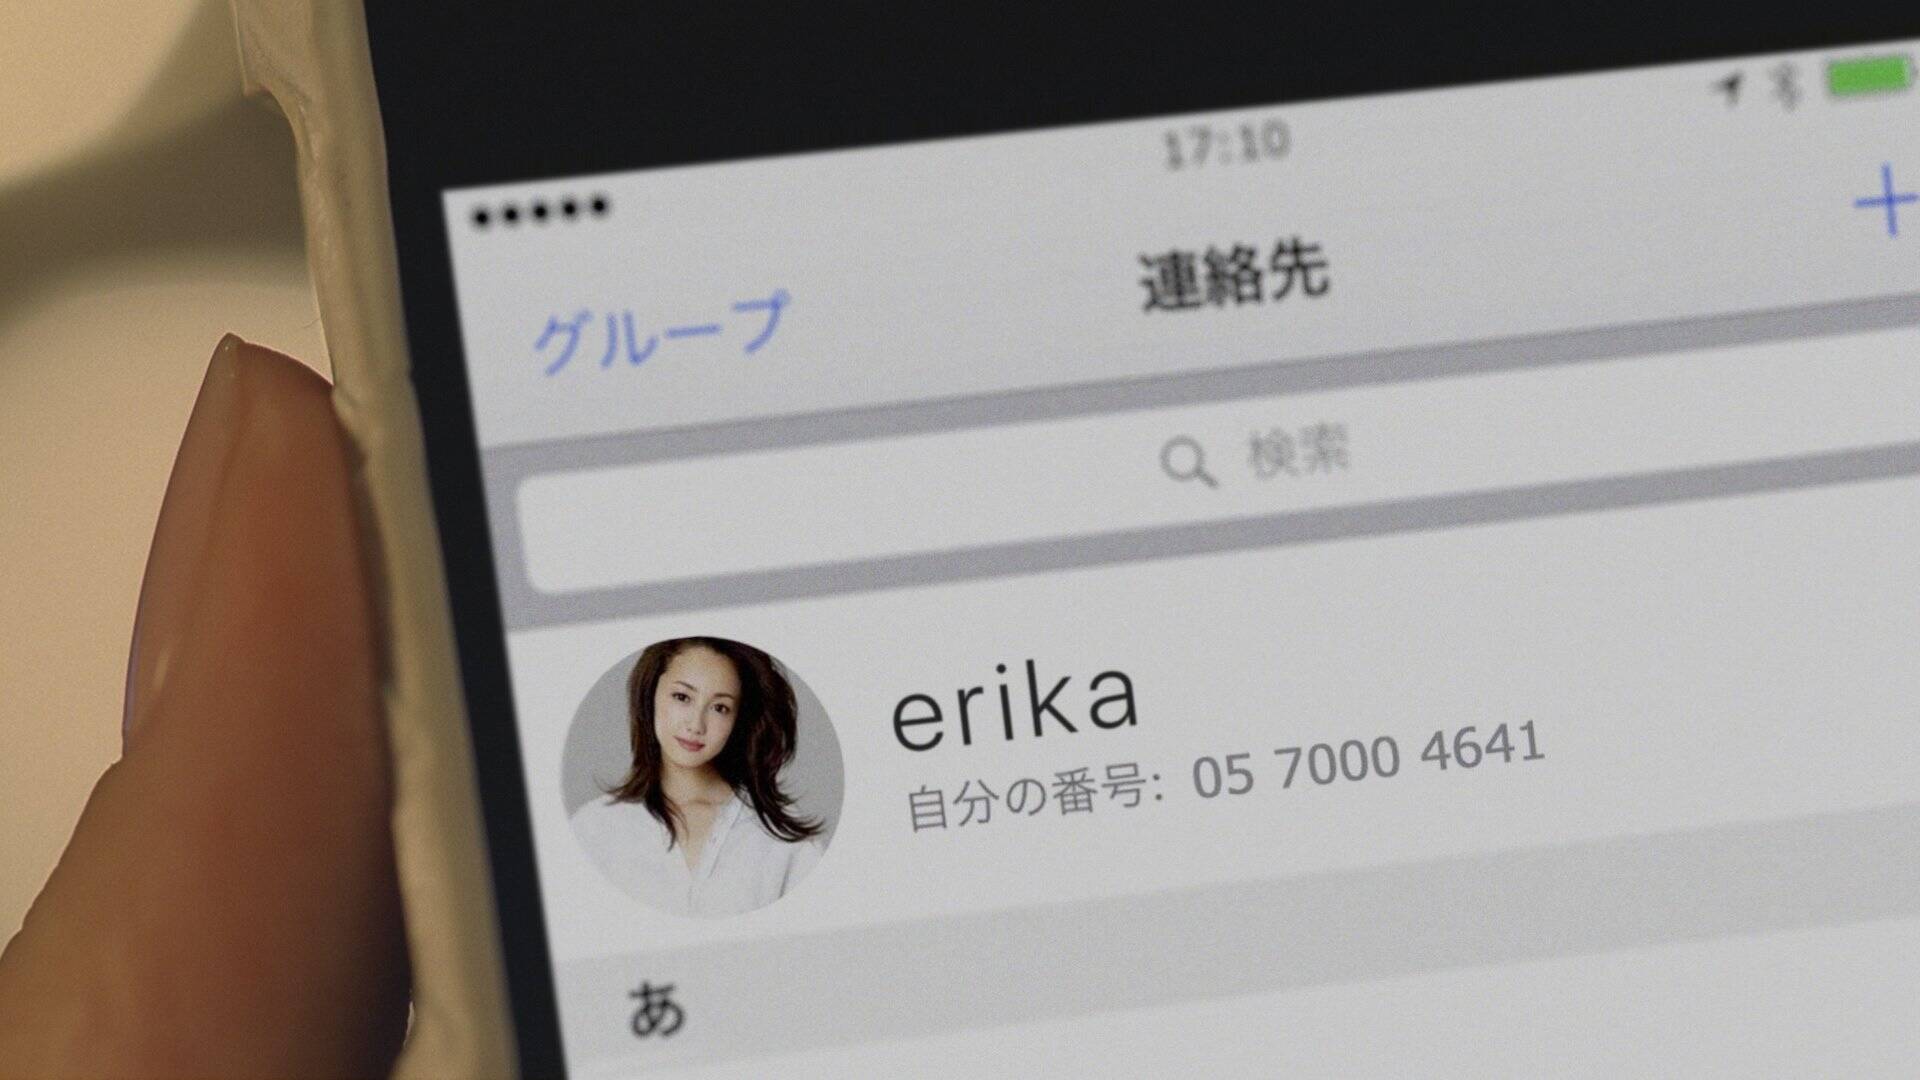 沢尻エリカの電話番号が流出！ 試しにかけてみた結果… (2017年3月7日) エキサイトニュース